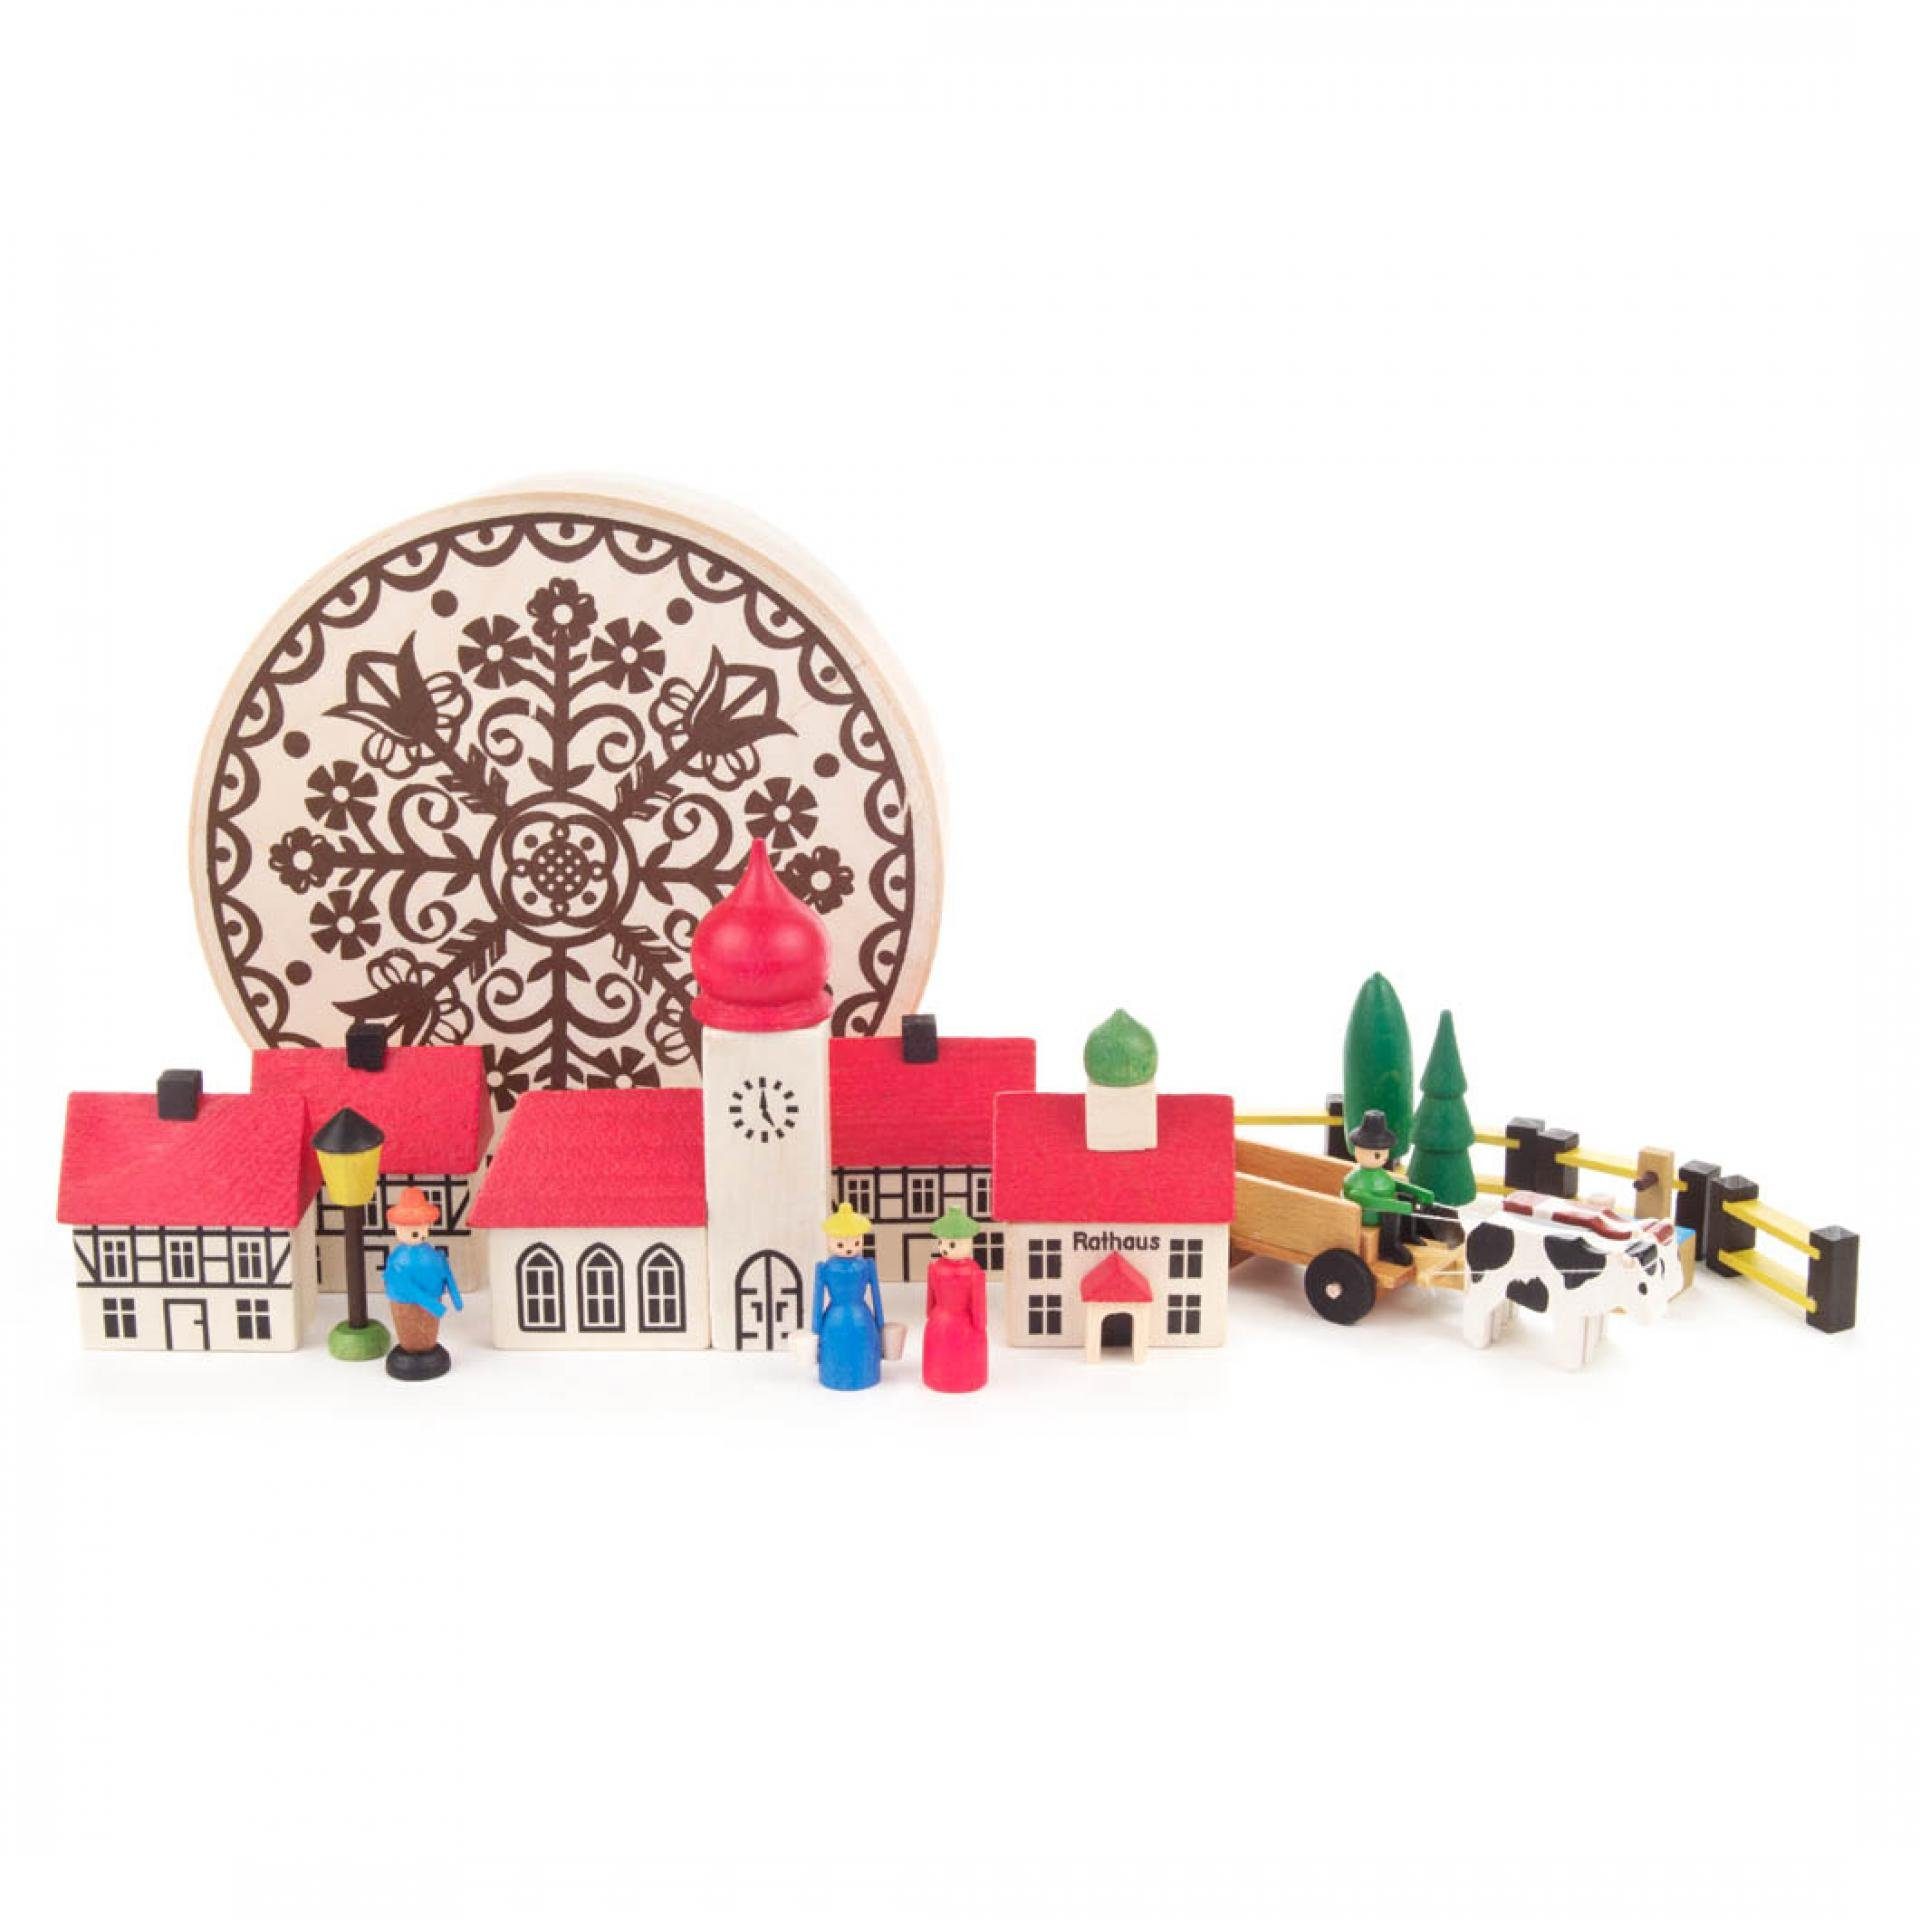 Spielwarenmacher Günther e.K. Weihnachtsfigur Miniaturfigur Dorf in Spandose (17 Teile) Höhe 5cm NEU, Spandose, Häuser, Zäune, Bäume, einzeln